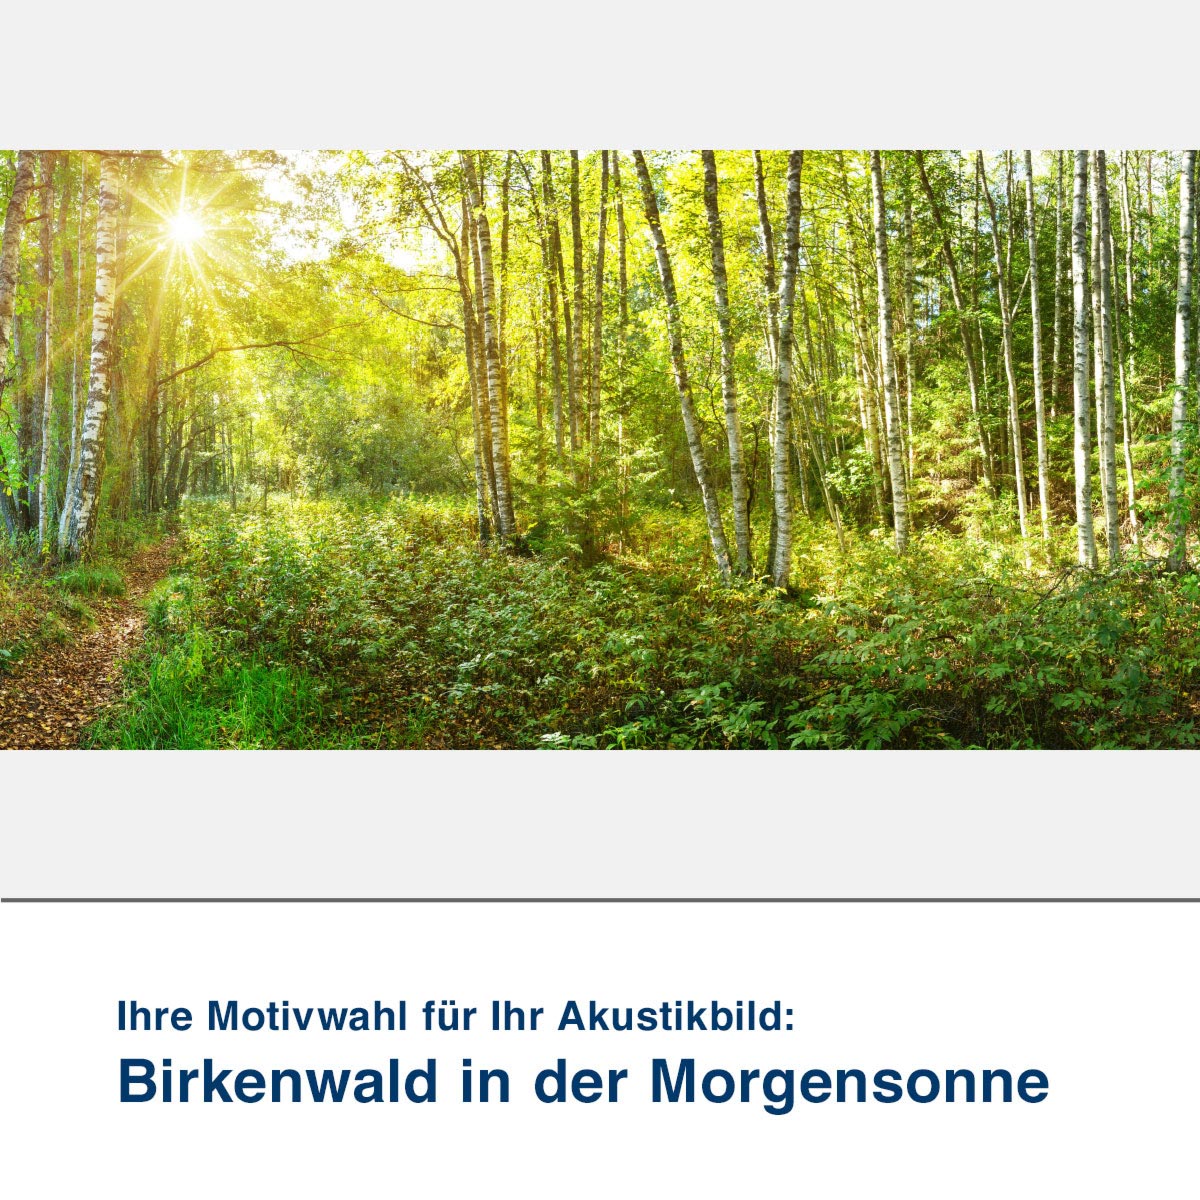 Akustikbild Motiv Birkenwald in der Morgensonne